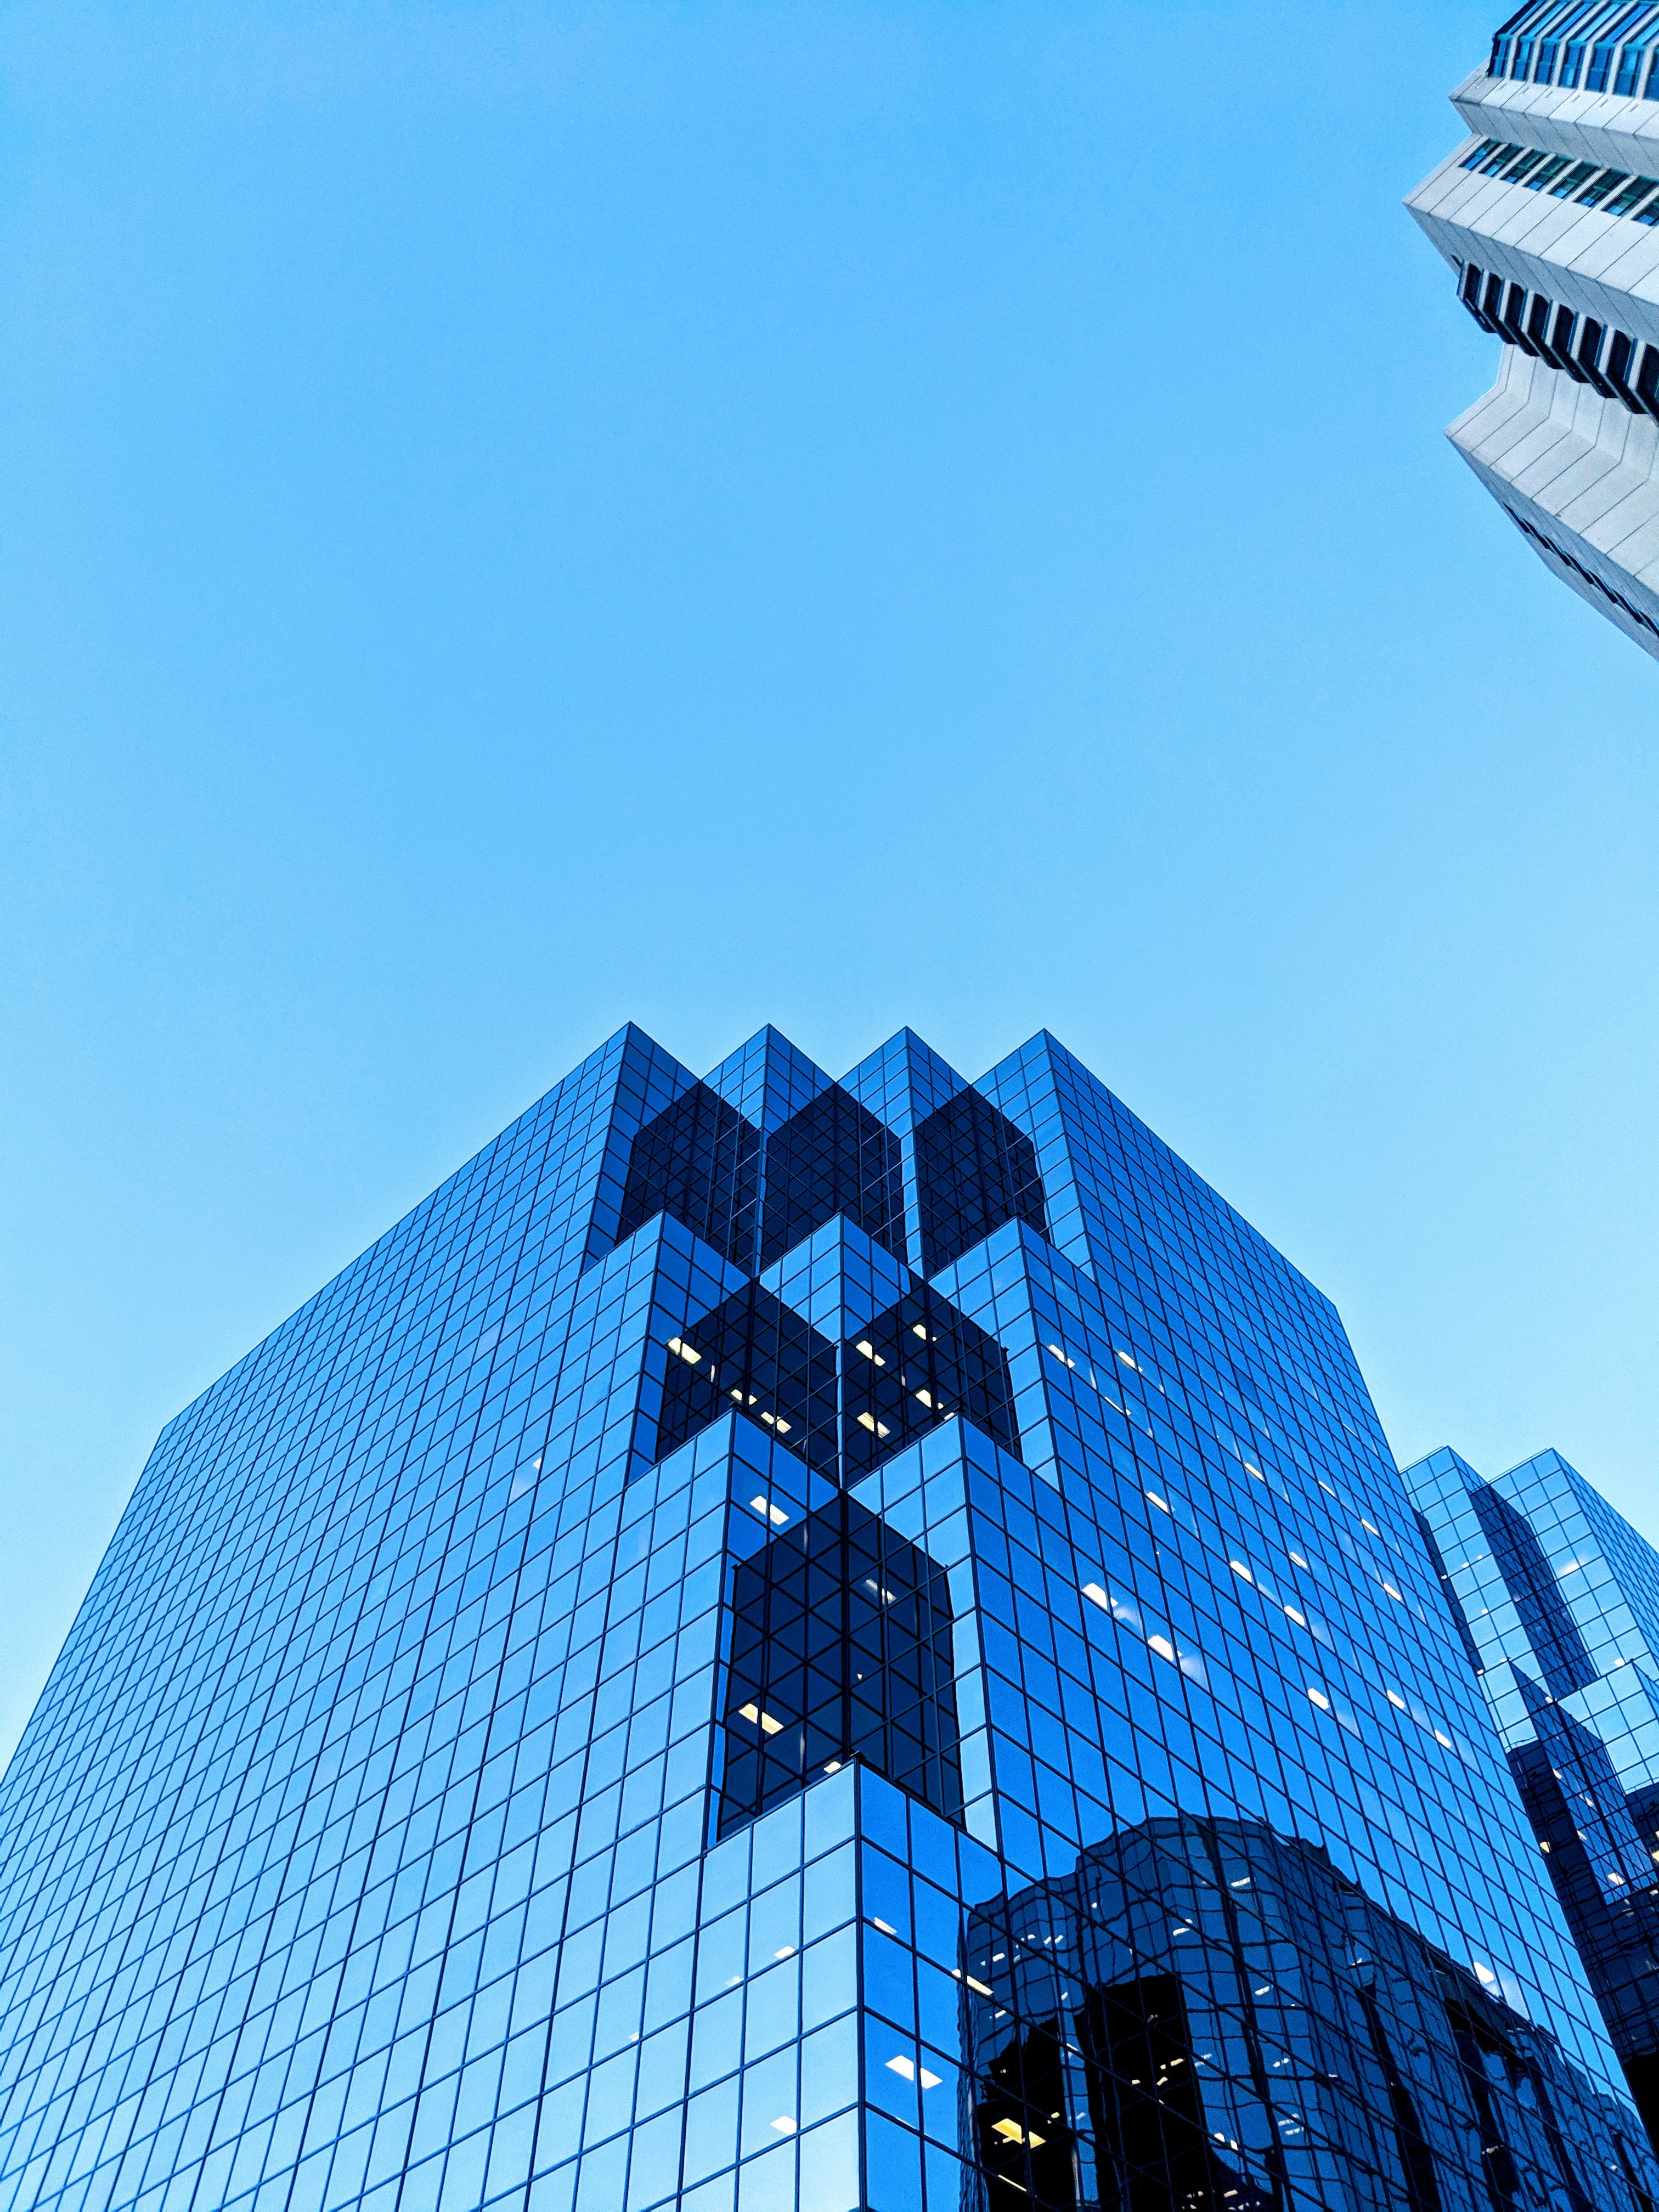 Photo immeuble bureaux ciel bleu contreplongée